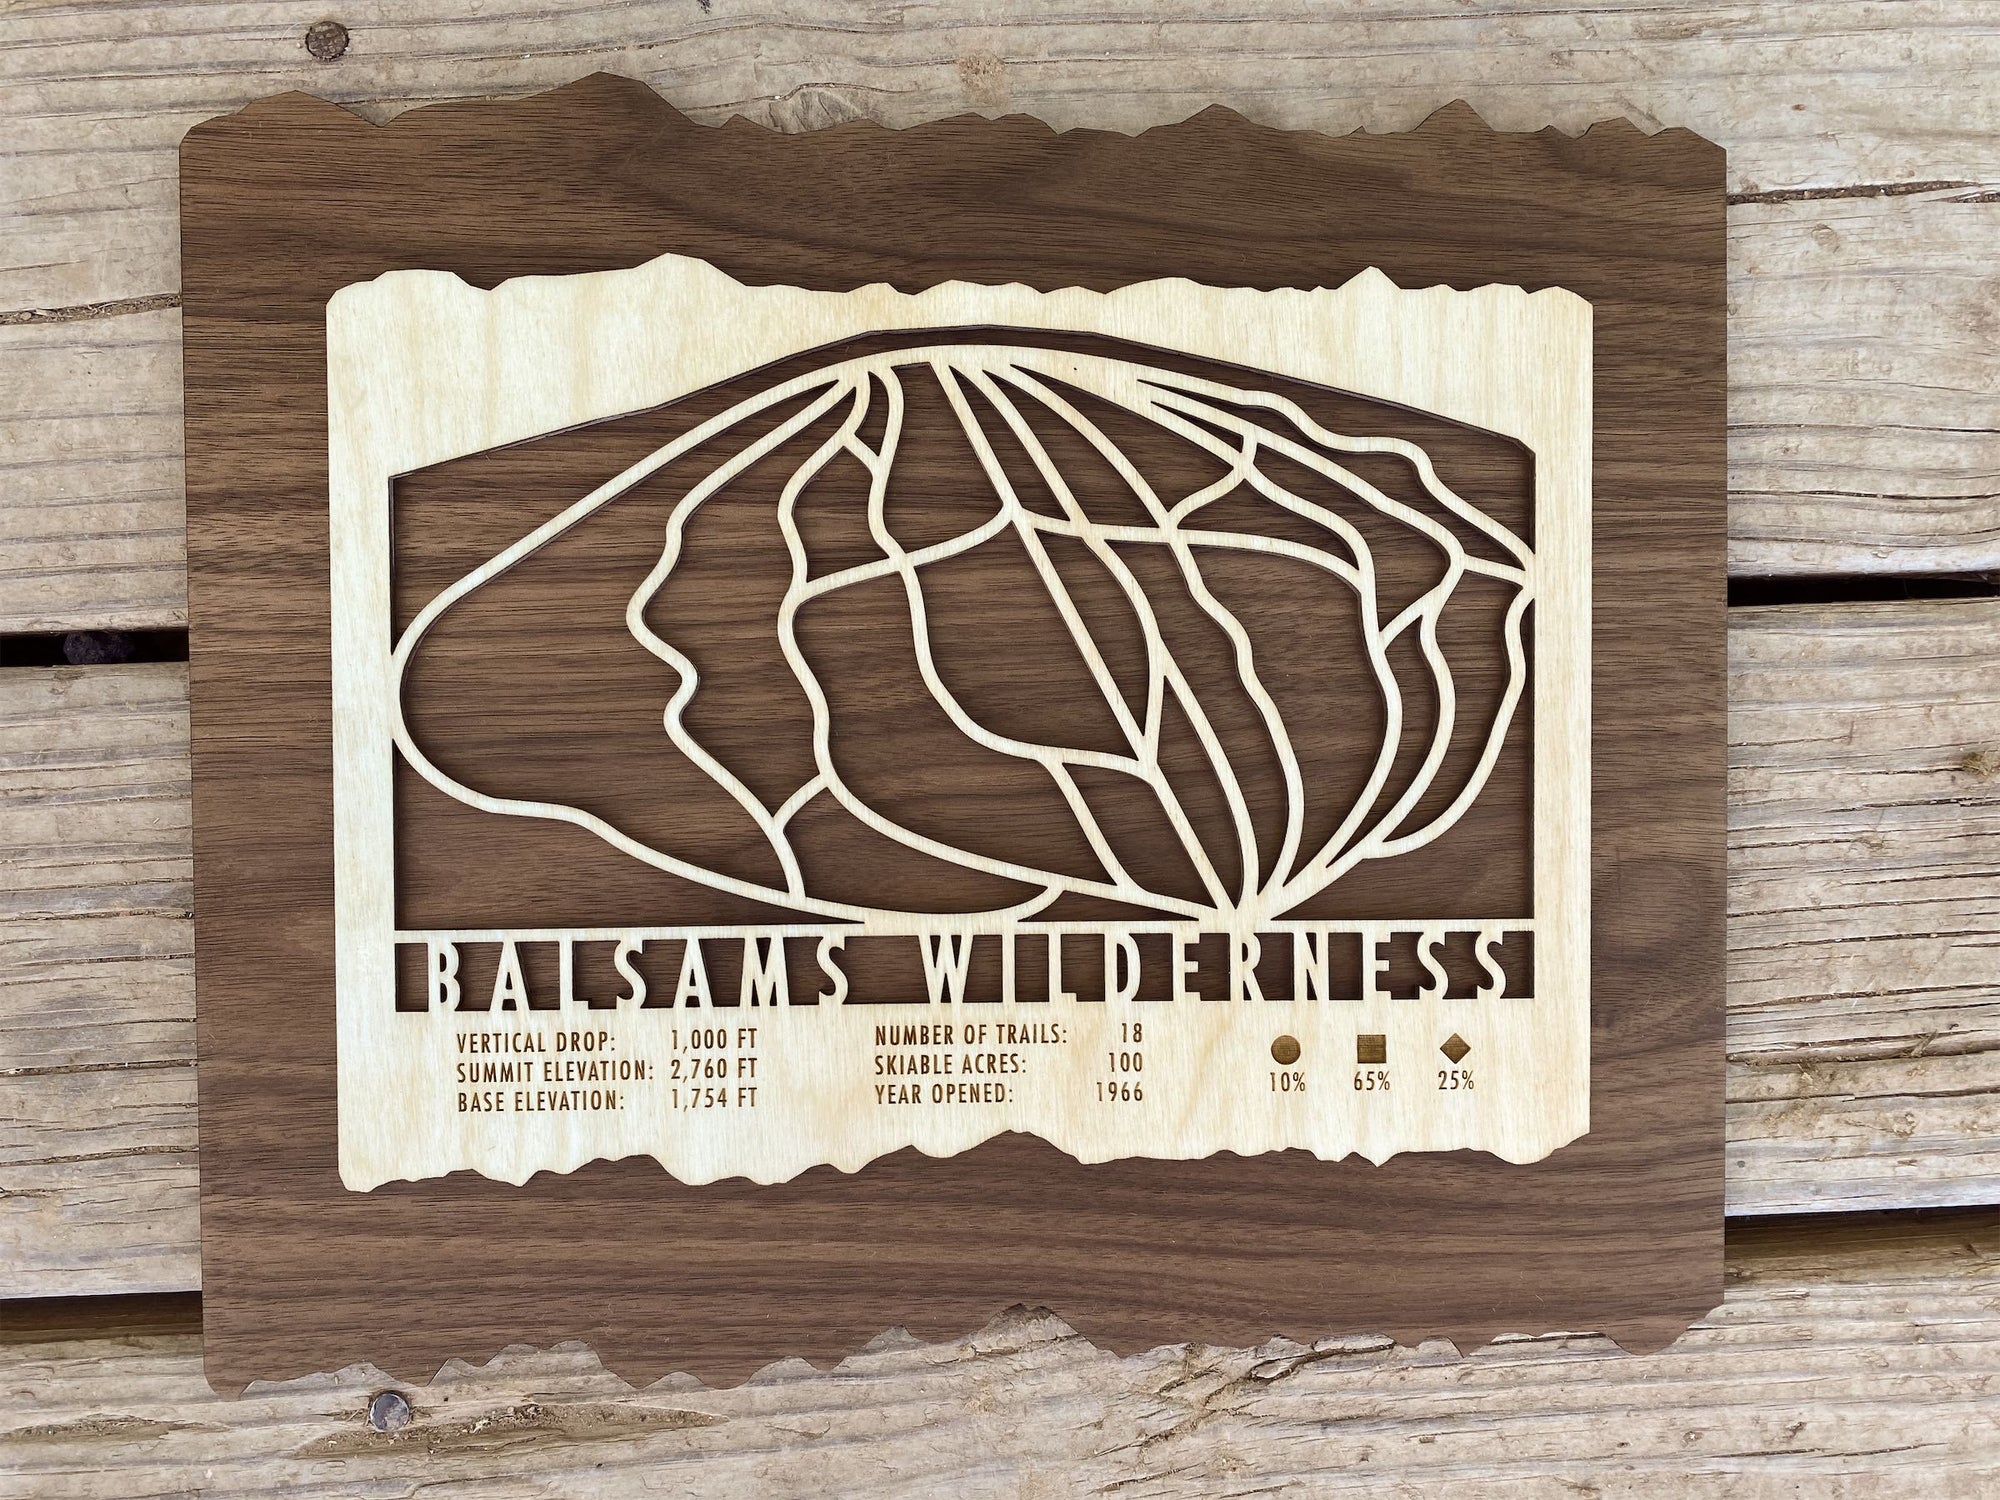 Balsams Wilderness Trail Map